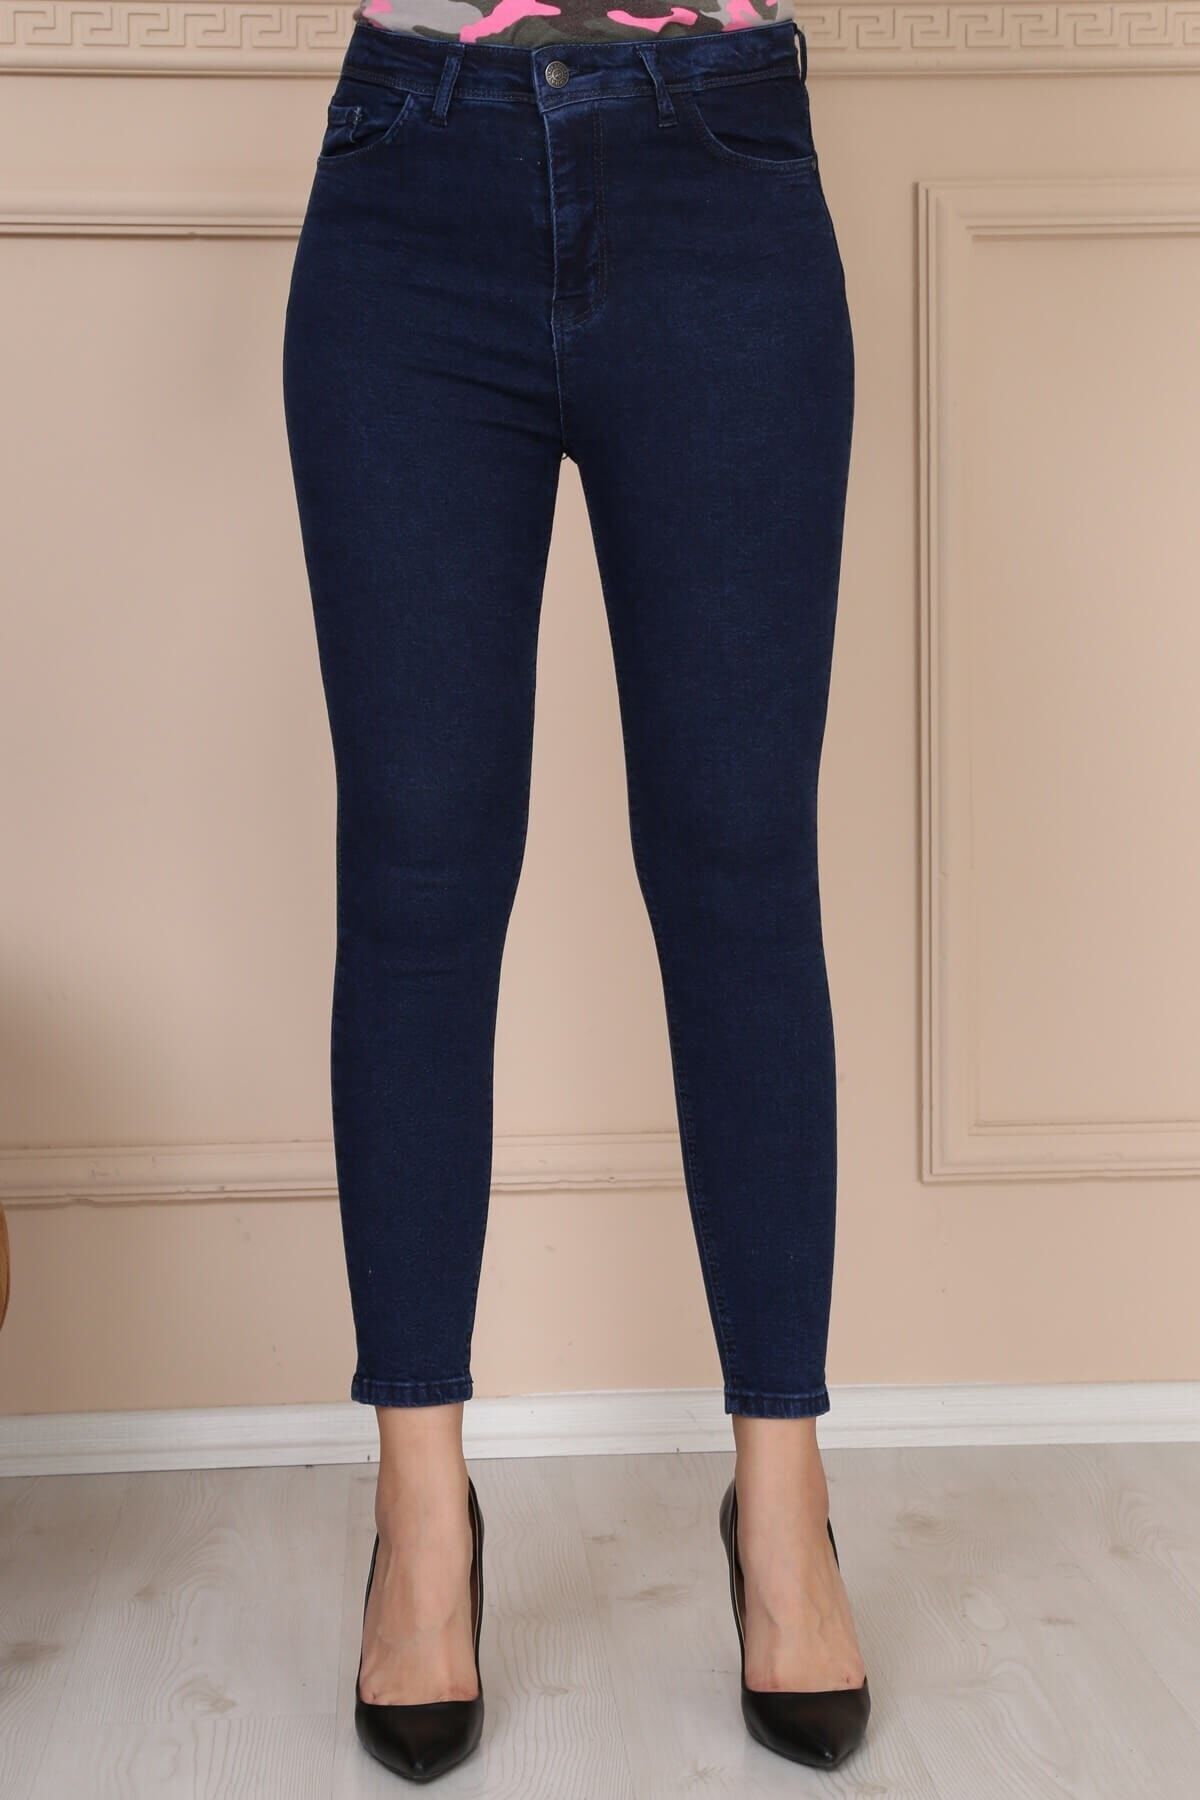 Modaca Kadın Koyu Lacivert Skinny Likralı Jean